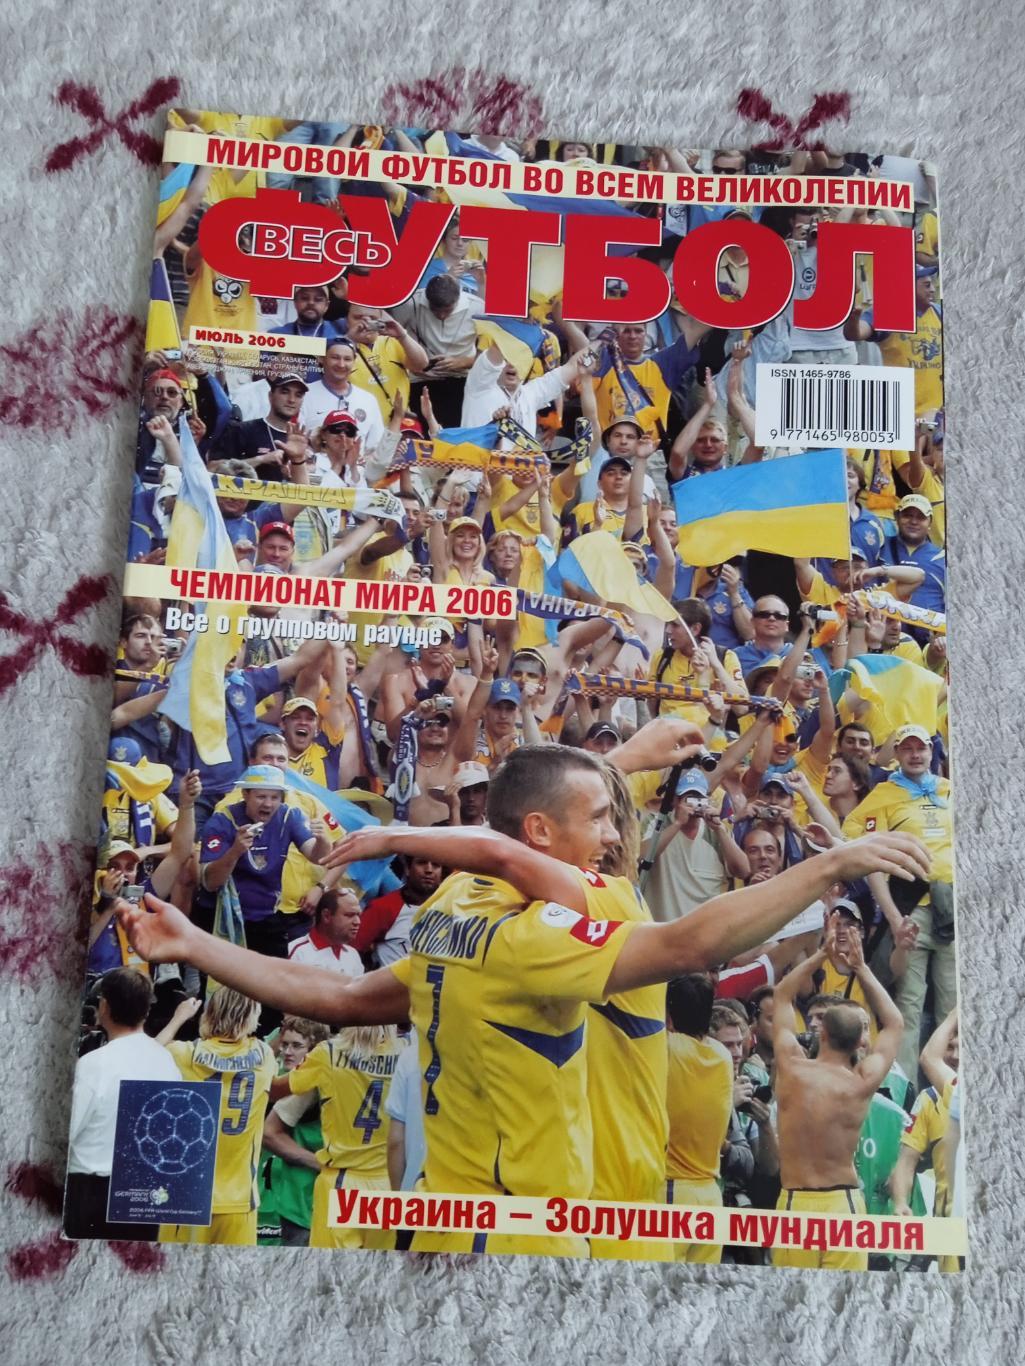 Журнал.Весь футбол июль 2006 г. (ЧМ 2006 Германия).